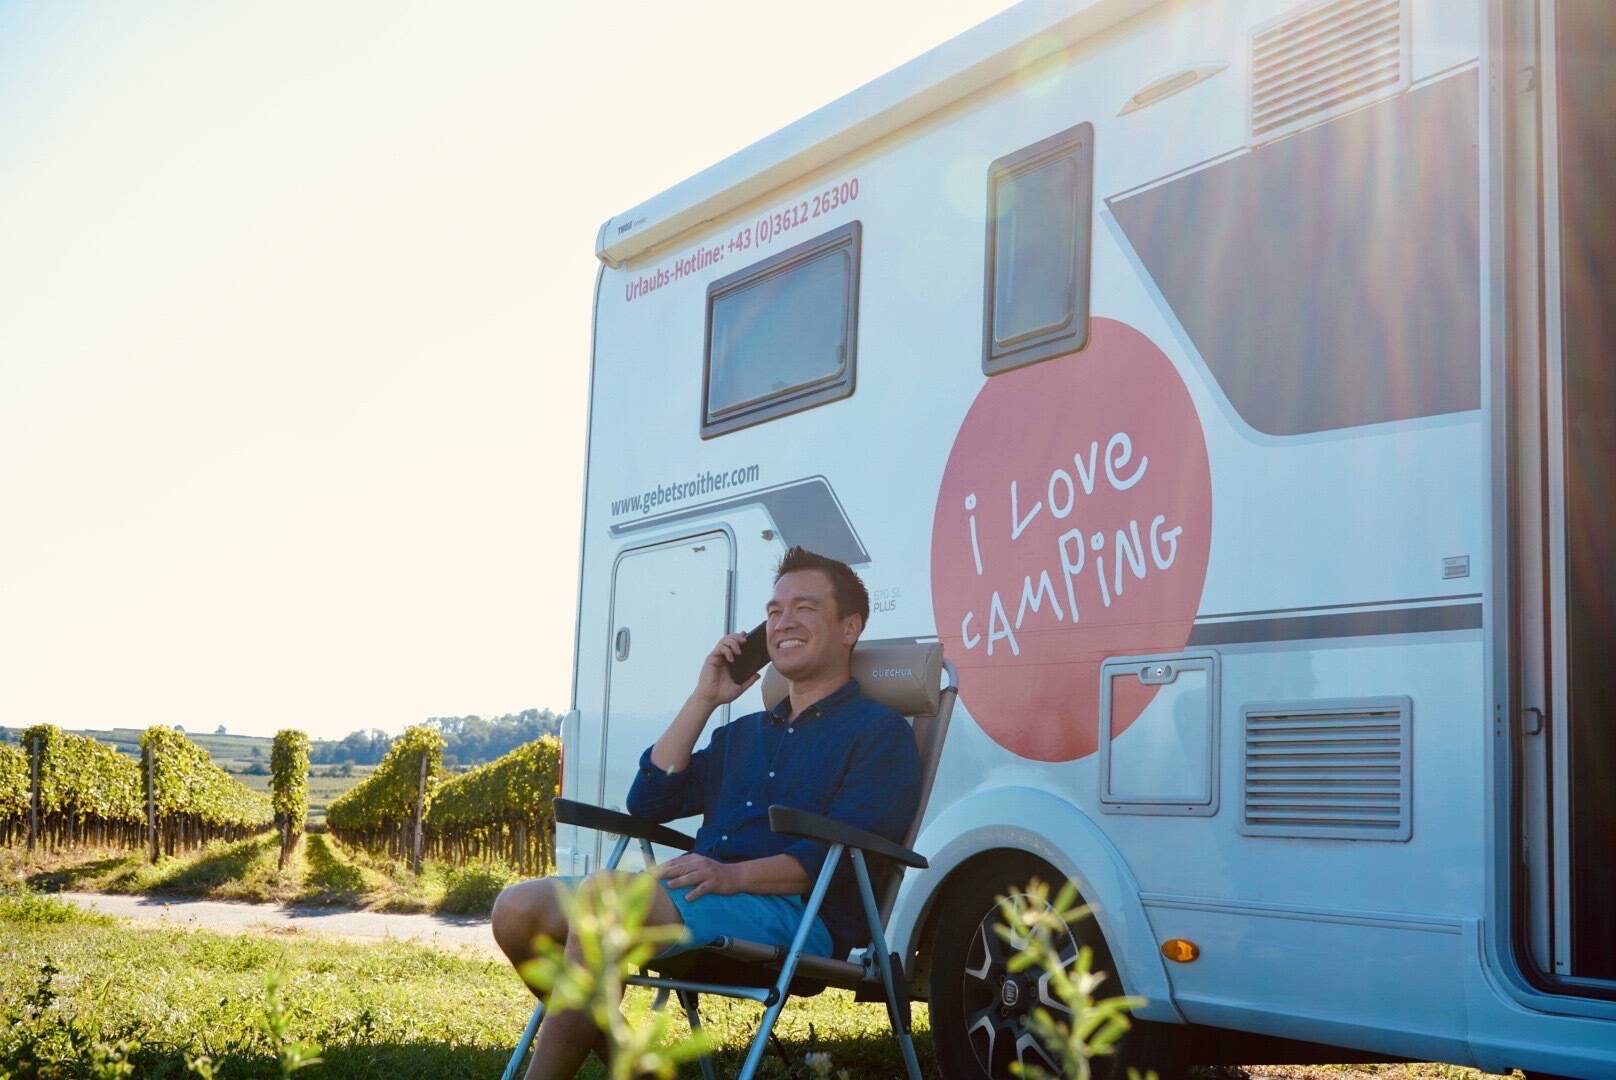 Ein Mann telefoniert in einem Campingstuhl vor einem Wohnmobil sitzend